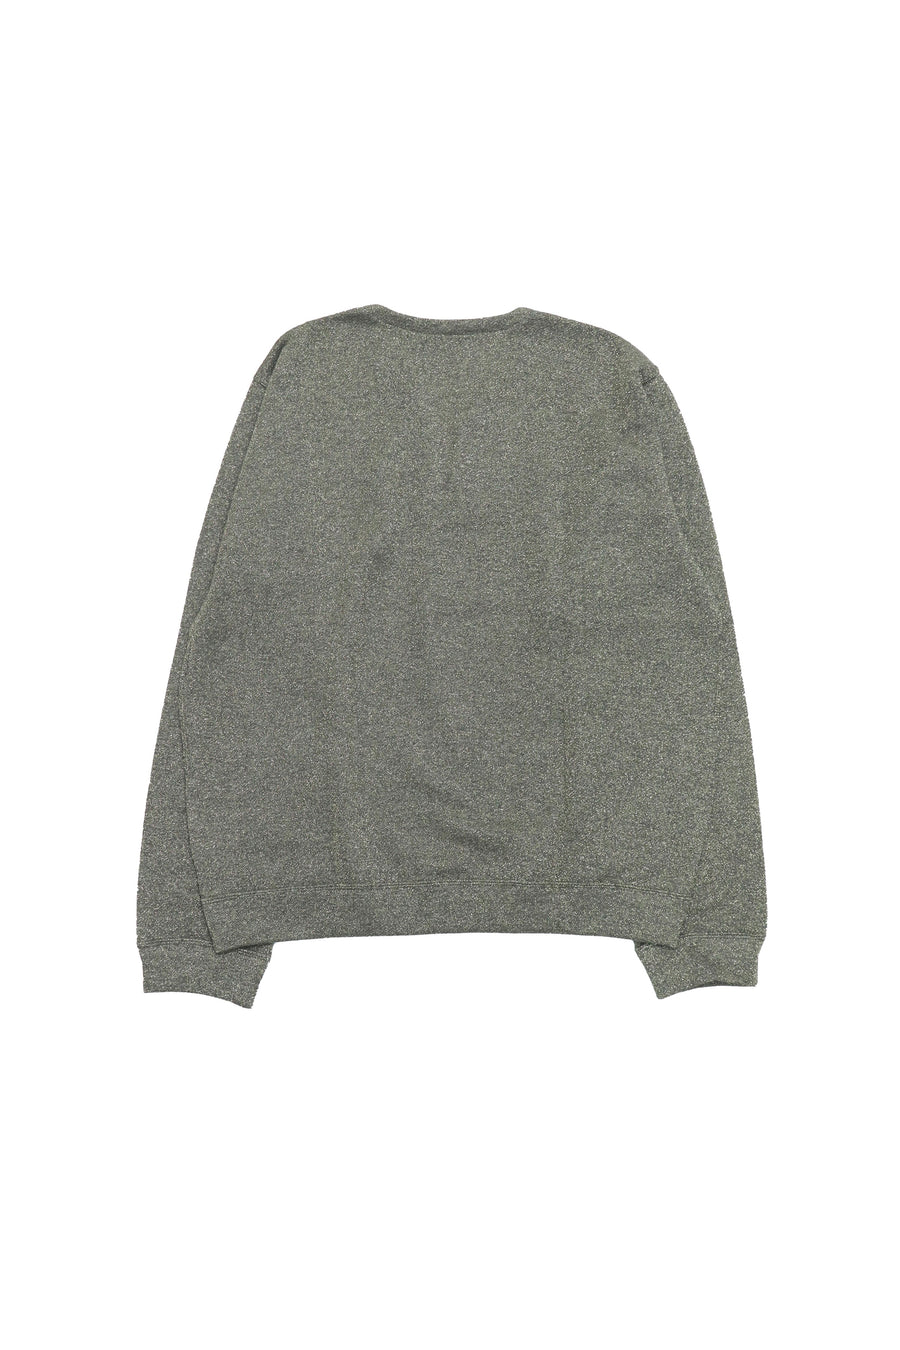 Taiga Igari  Pixie Dust Sweat Shirt(Dark Grey / Gold)